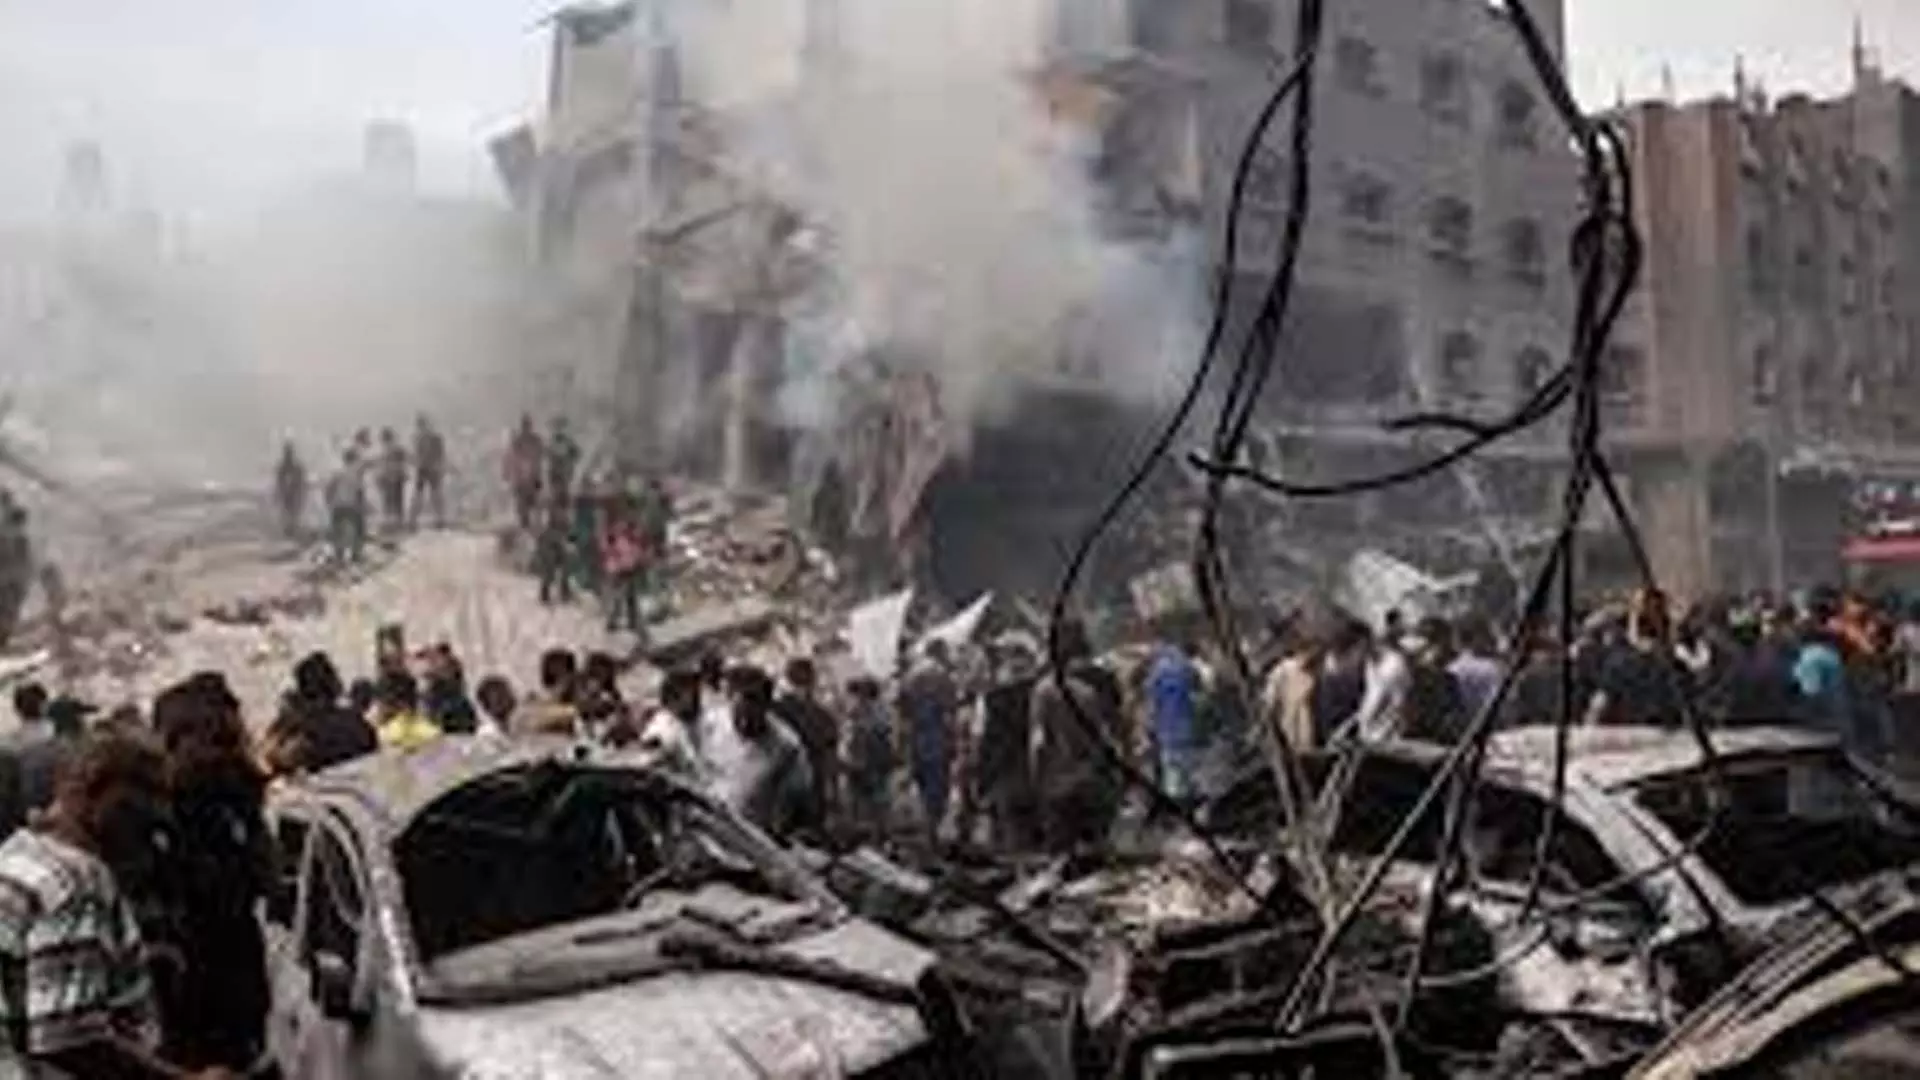 Gaza News: गाजा में इजरायली हवाई हमलों में दर्जनों लोग मारे गए